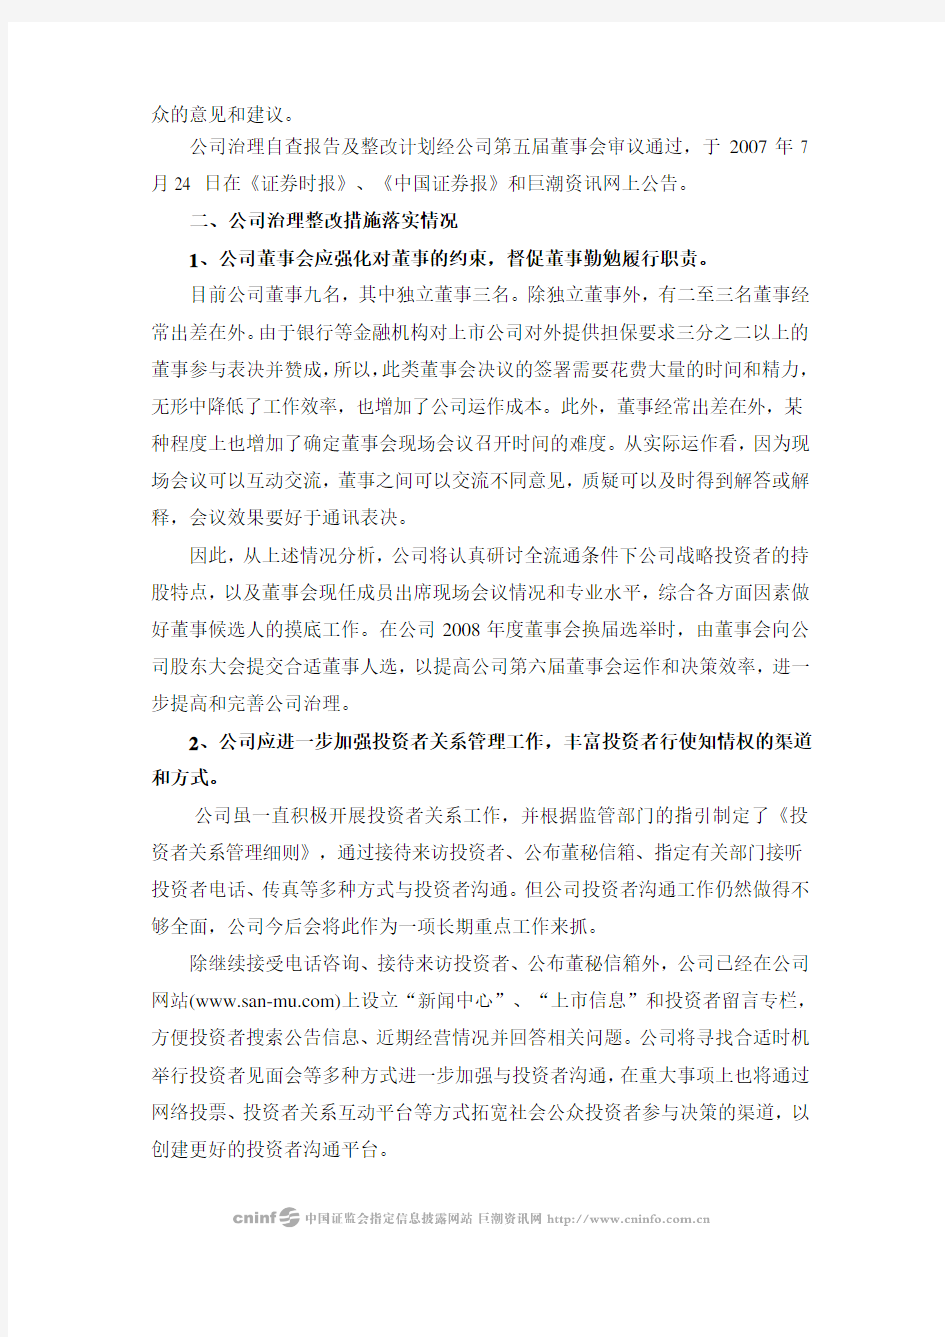 福建三木集团股份有限公司公司治理整改报告